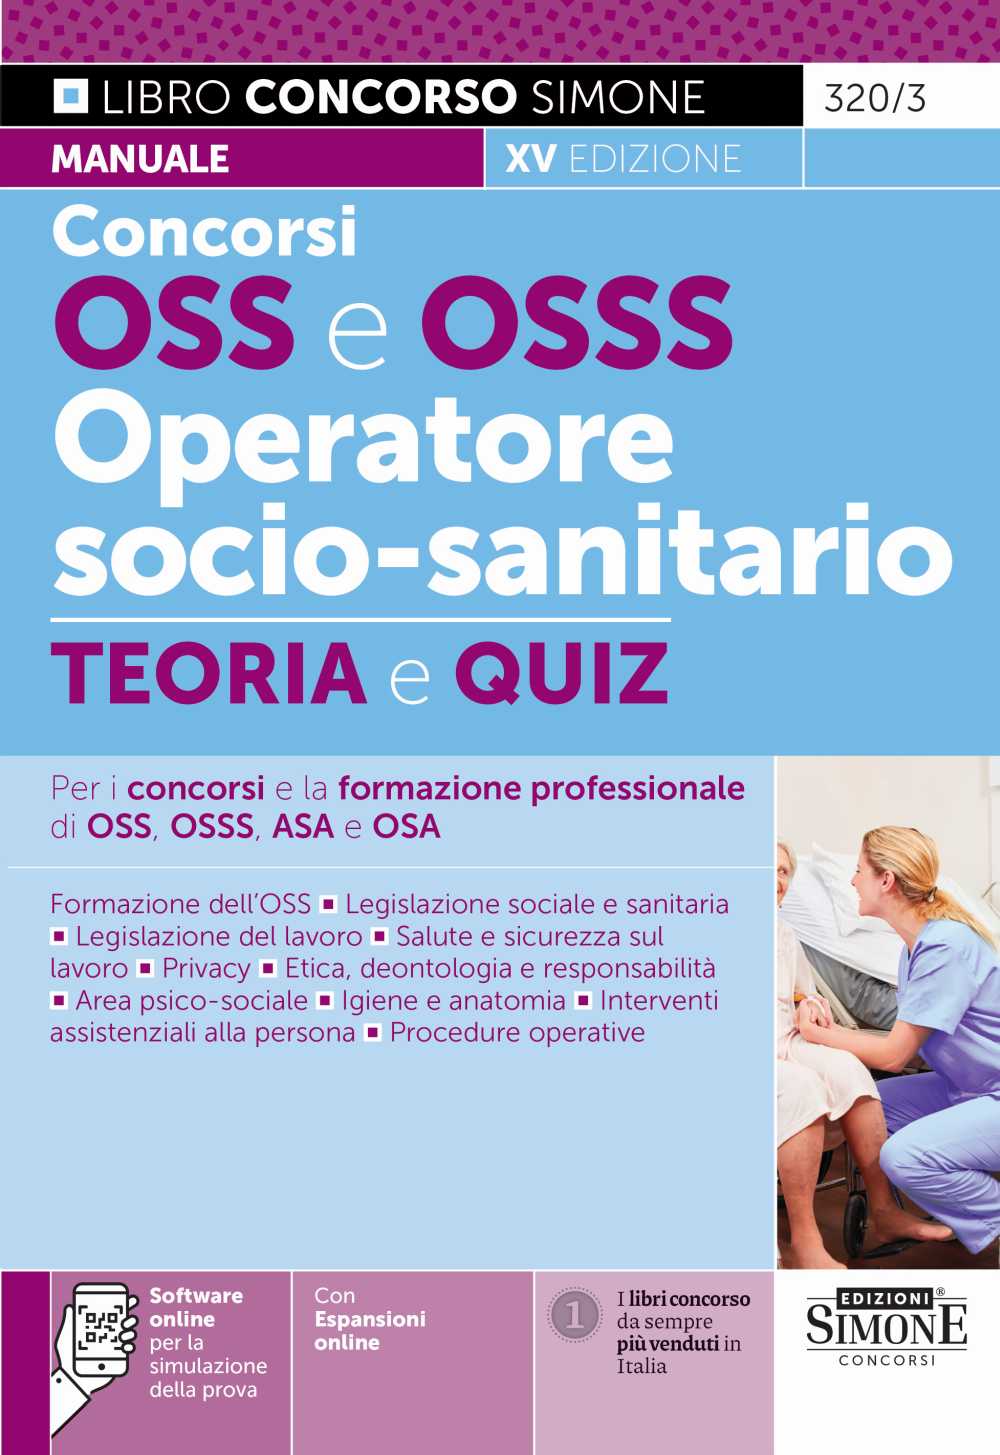 Manuale Concorsi OSS e OSSS Operatore Socio-Sanitario - 320/3